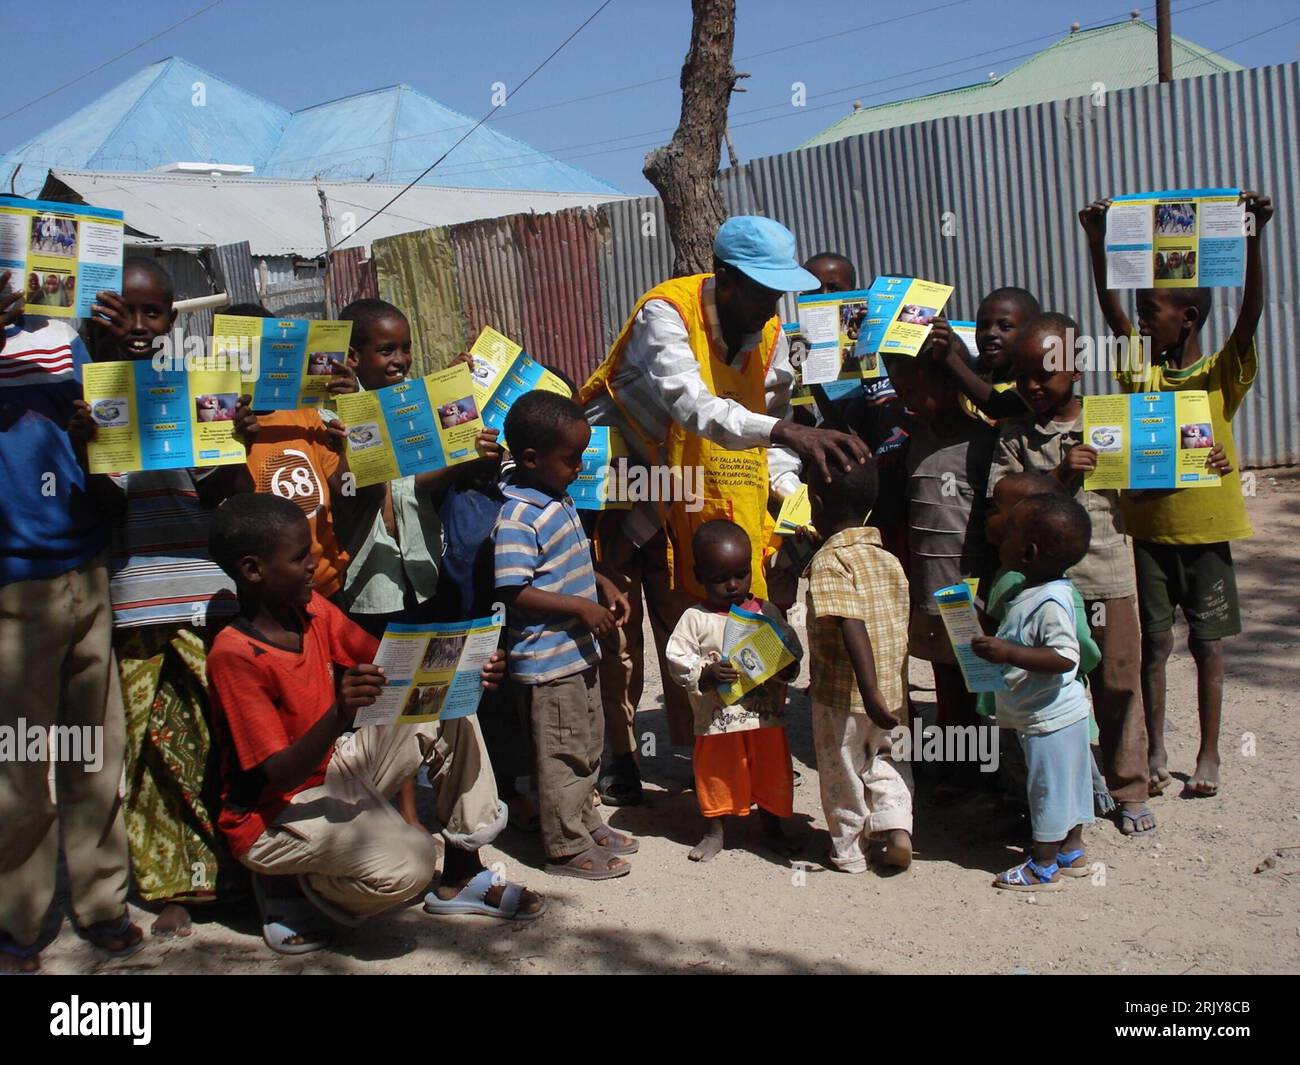 Bildnummer: 52471276  Datum: 26.03.2008  Copyright: imago/Xinhua Kinder werben in Mogadischu mit Flyern für Polio-Vorsorge - Somalia PUBLICATIONxNOTxINxCHN, Personen; 2008, Mogadishu, Somalia, Kind, Kinder, Aktion, Vorsorge, Kinderlähmung, Vorbeugung, Impfung, Handzettel, Aufklärung, Junge, Jungen, Kleinkind, Kleinkinder, Prävention; , quer, Kbdig, Totale,  , Gesundheit, Afrika o0 Gesellschaft Stock Photo